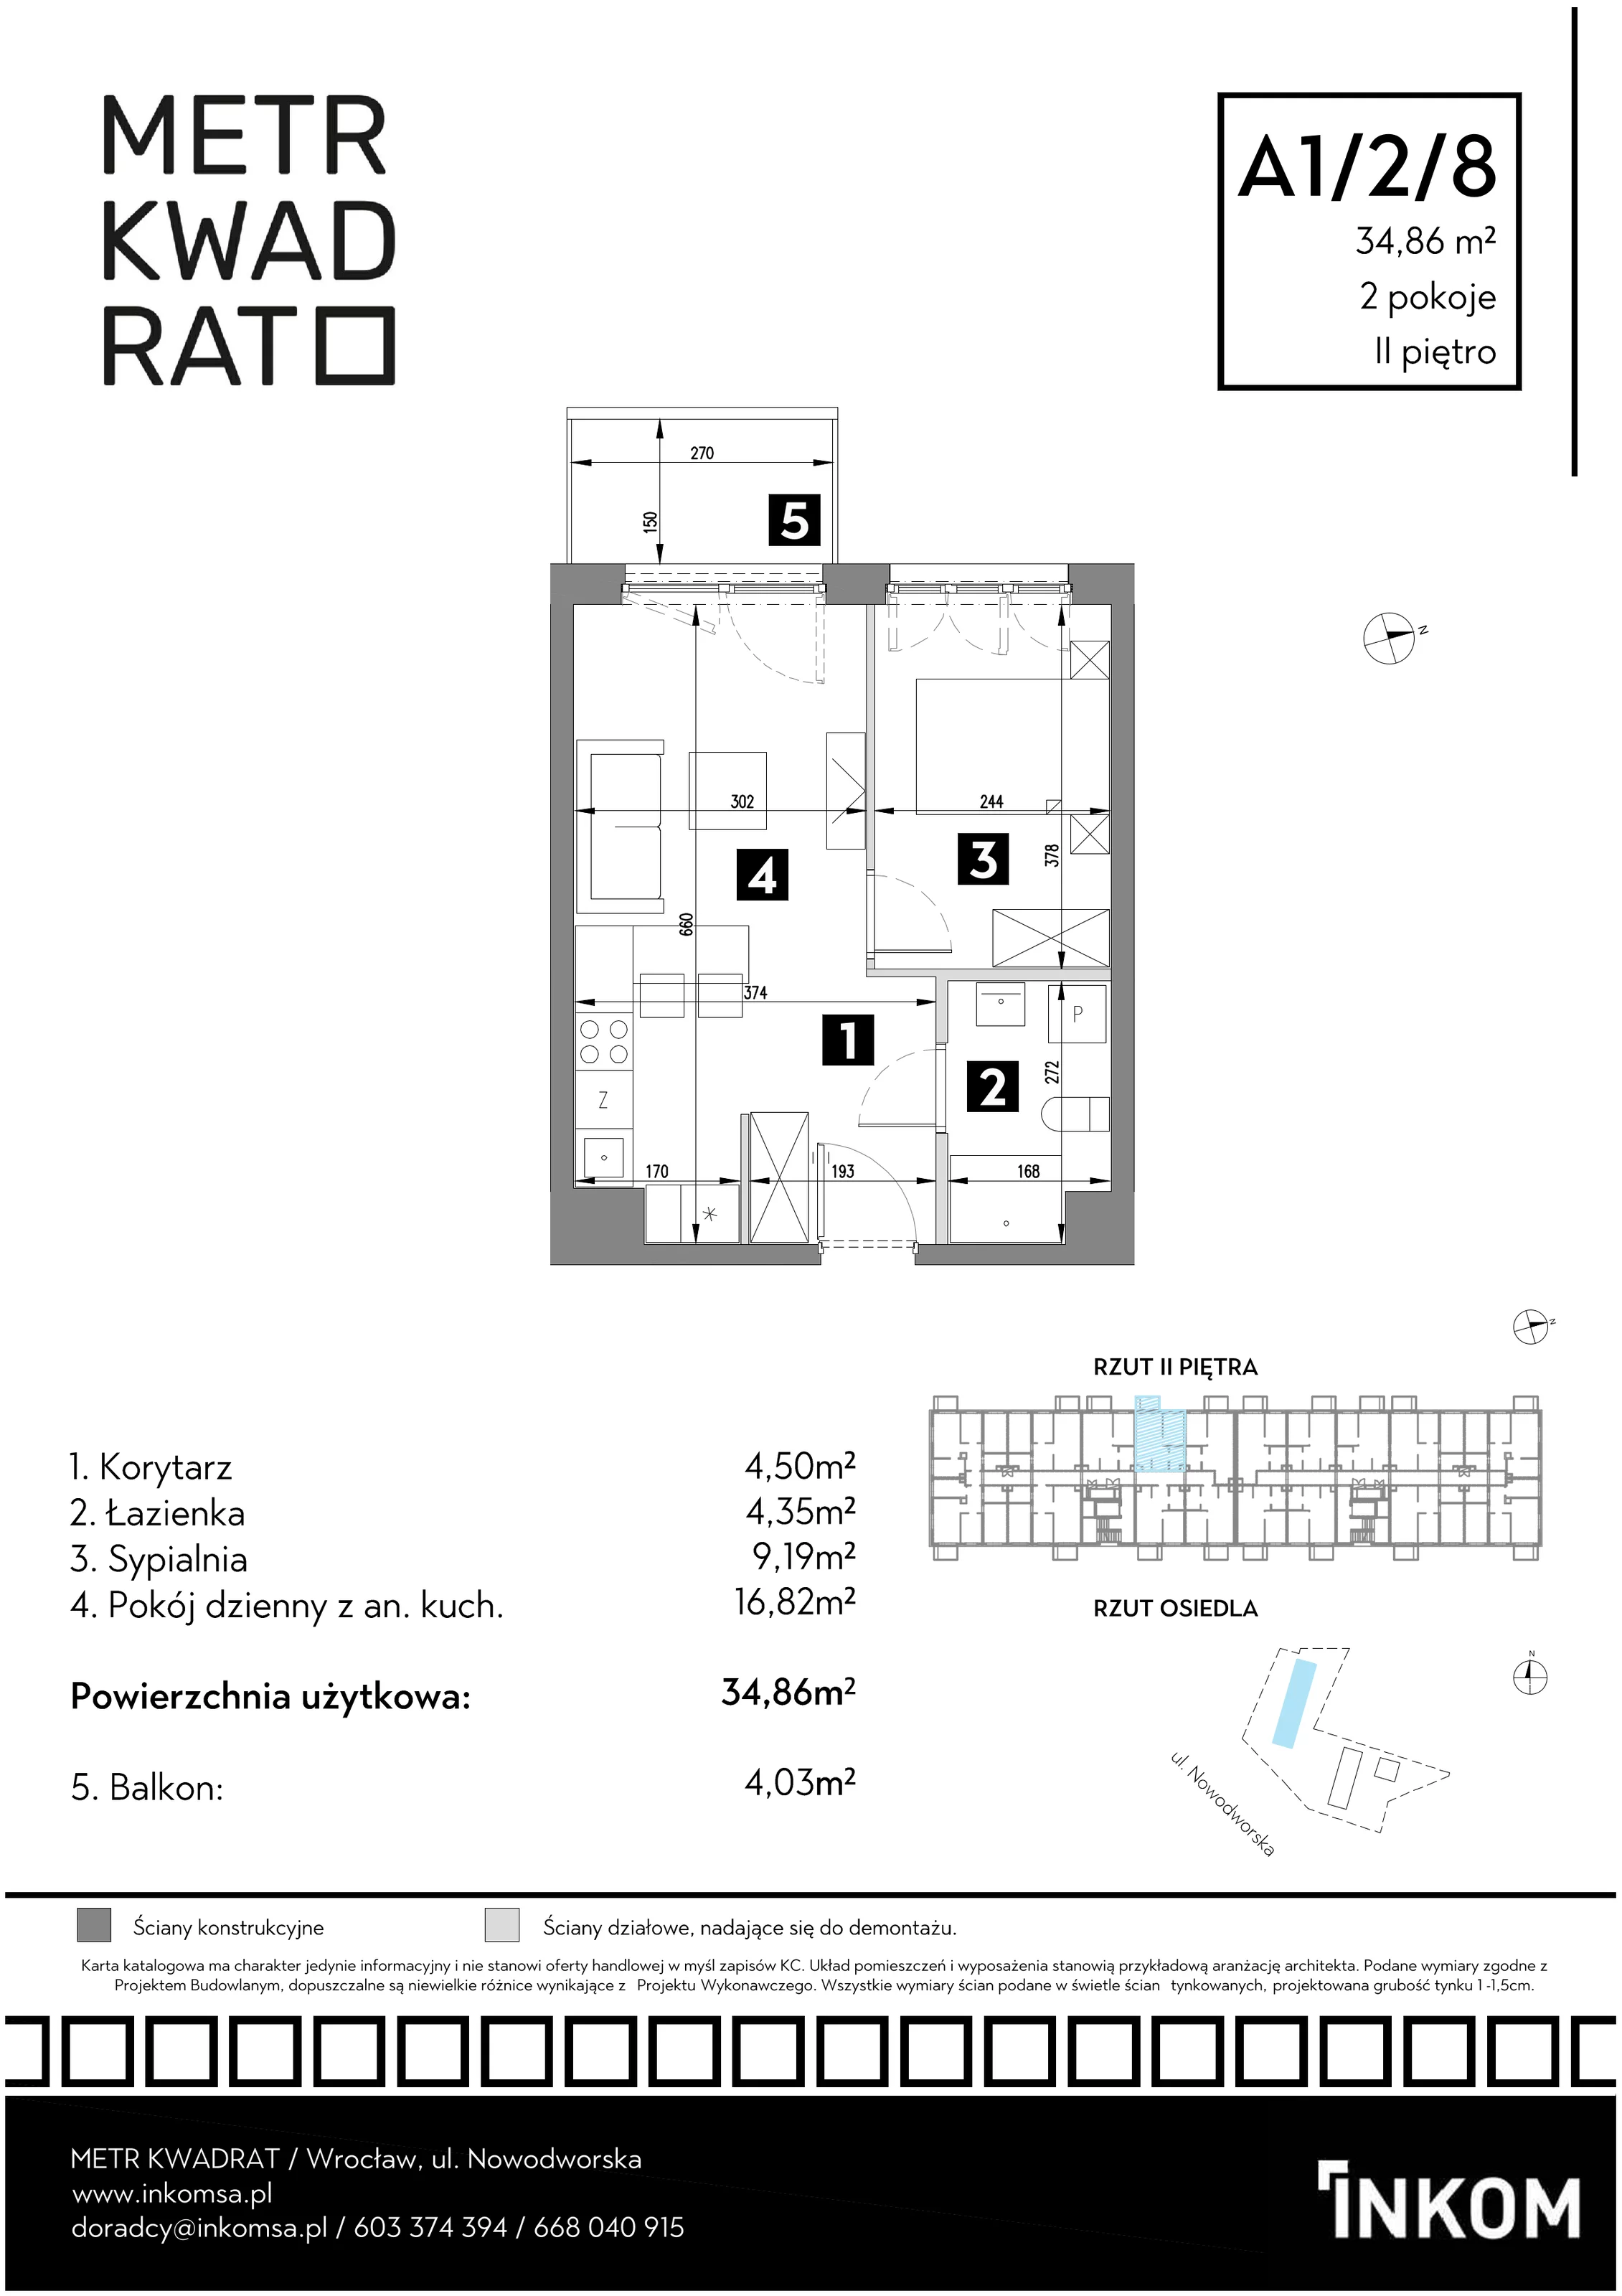 Mieszkanie 34,86 m², piętro 2, oferta nr A1/2/8, Metr Kwadrat, Wrocław, Nowy Dwór, ul. Nowodworska 17B